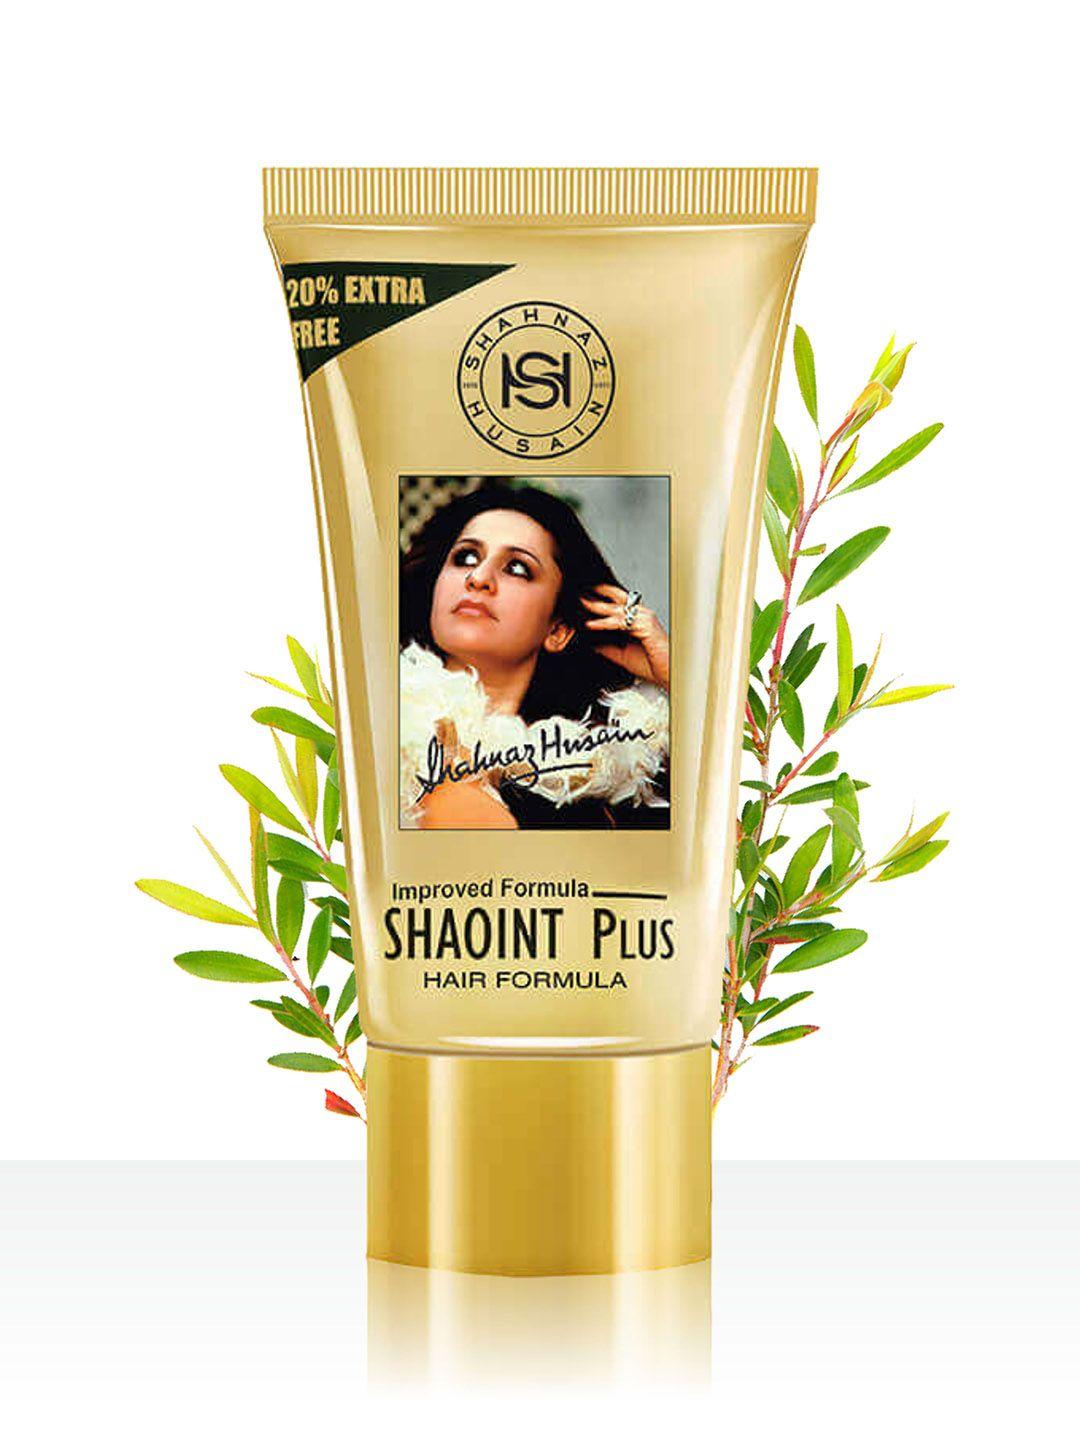 shahnaz husain shaoint plus hair formula - 25g